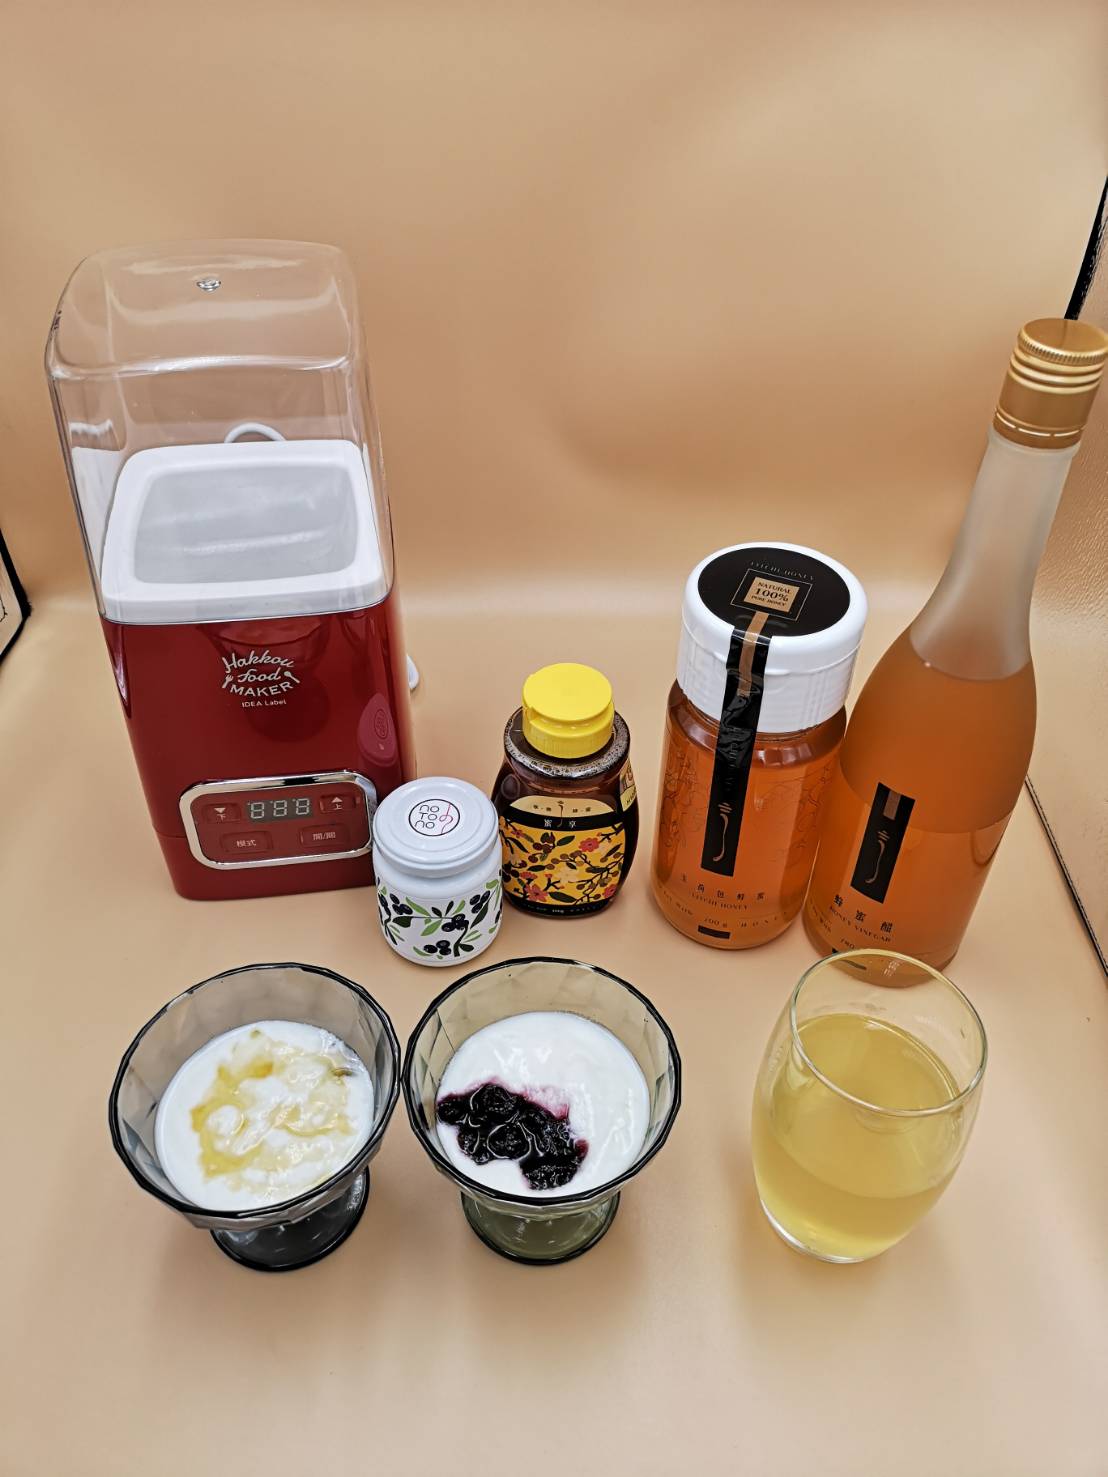 優格也能在家輕鬆做-日本BRUNO優格機、享樂蜂蜜、日本果醬